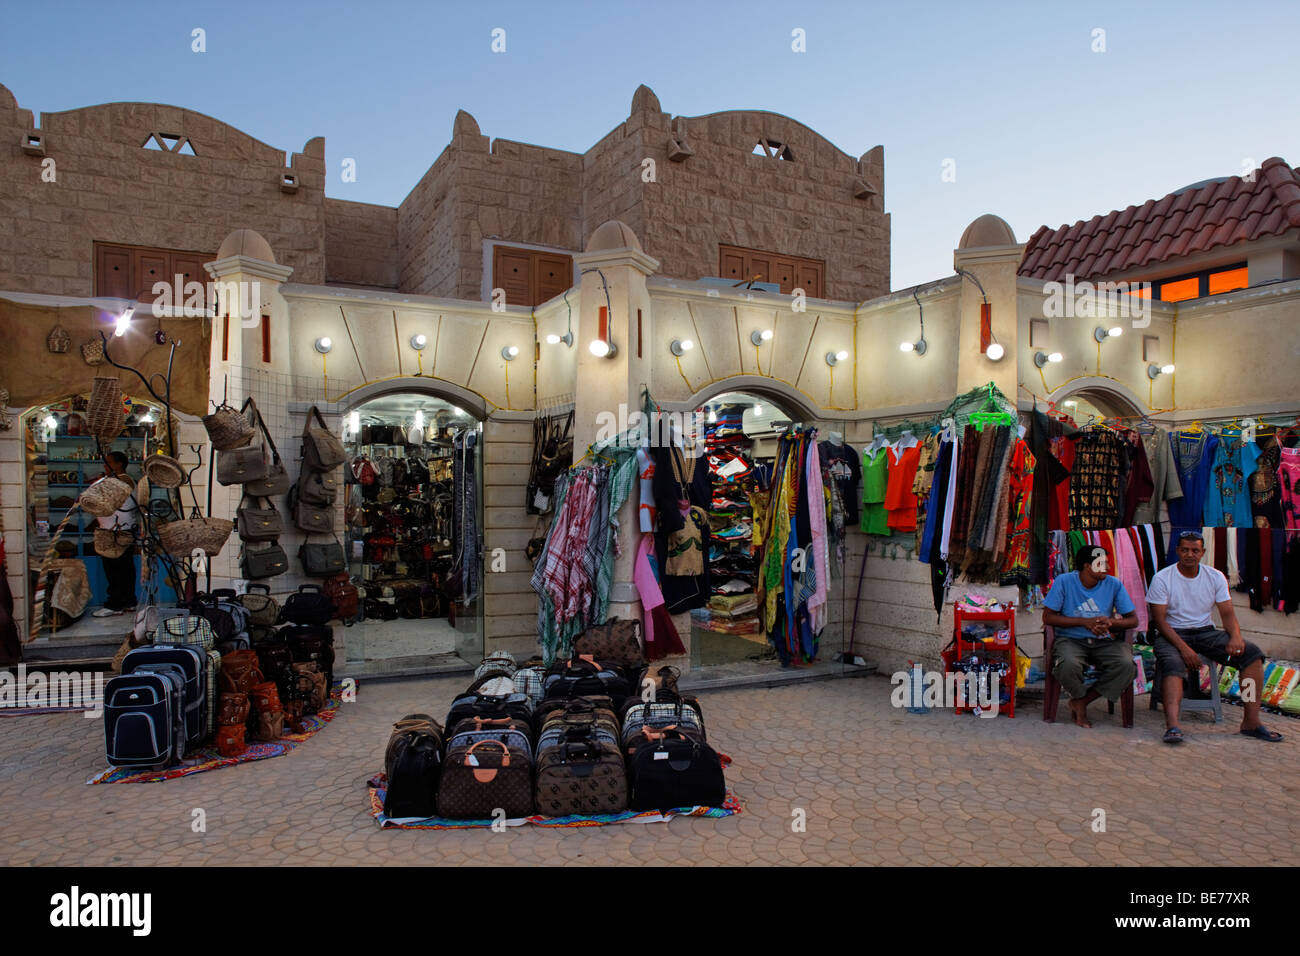 Boutique de souvenirs, souvenirs, fournisseur, éclairé, soir, Yussuf Afifi road, Hurghada, Egypte, Mer Rouge, Afrique Banque D'Images